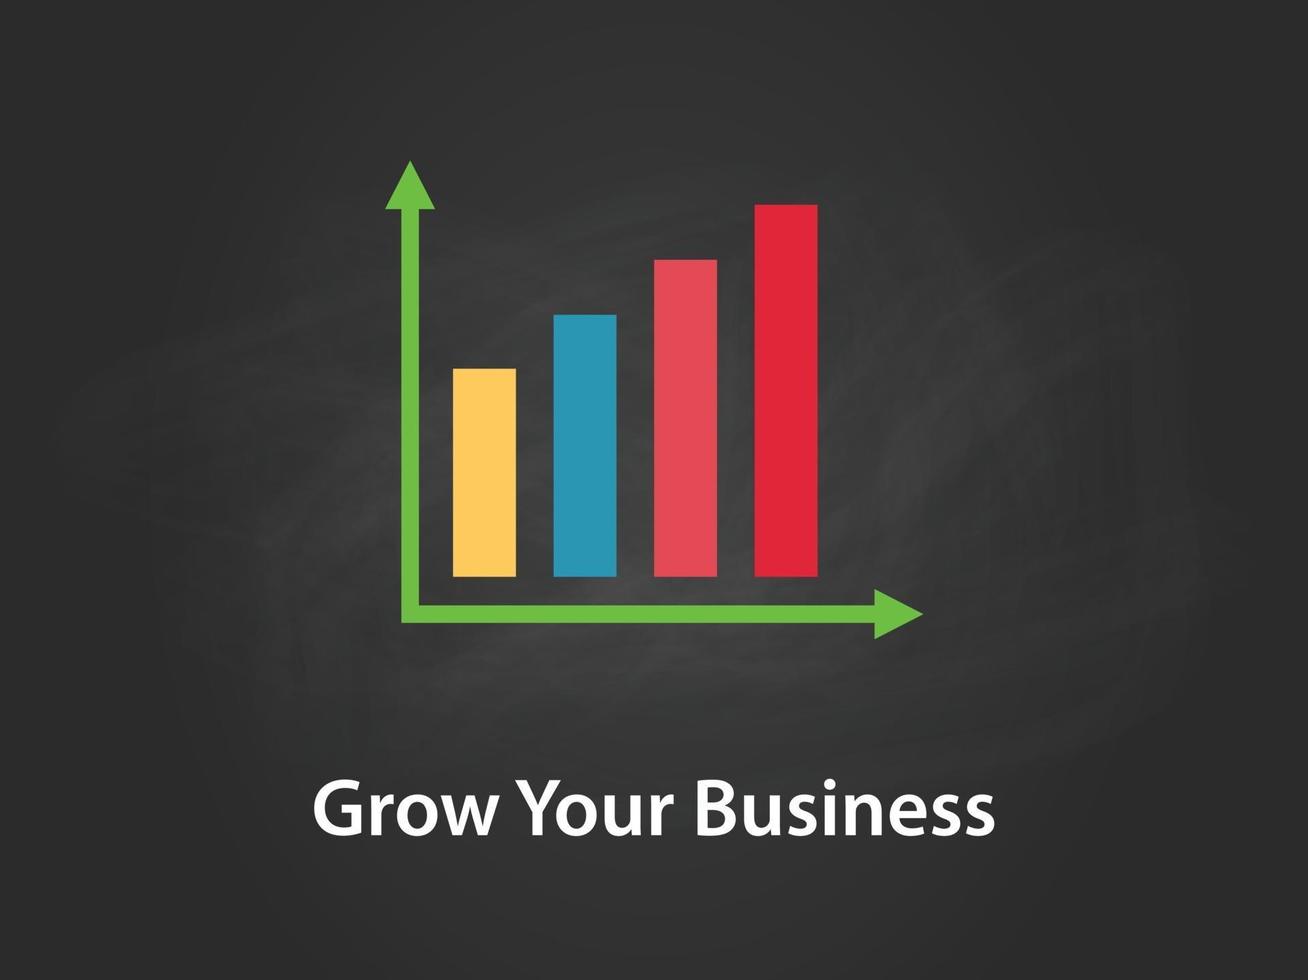 växa ditt företag diagram illustration med färgglada bar vektor